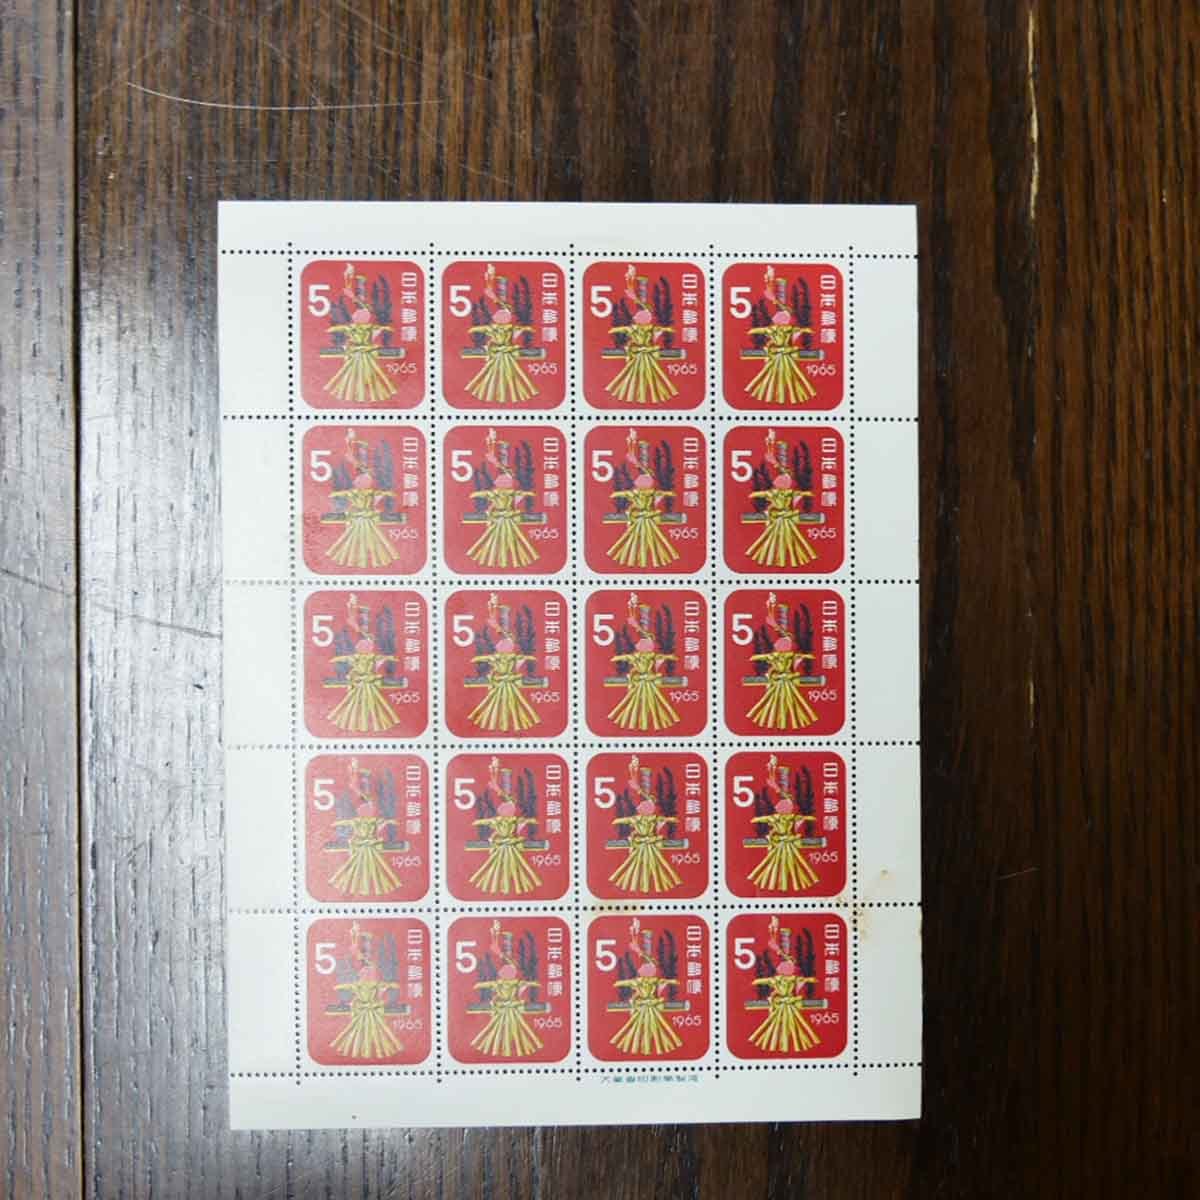 年賀切手 麦わらへび 5円 20面シート 昭和40年 1965年 未使用品の画像1